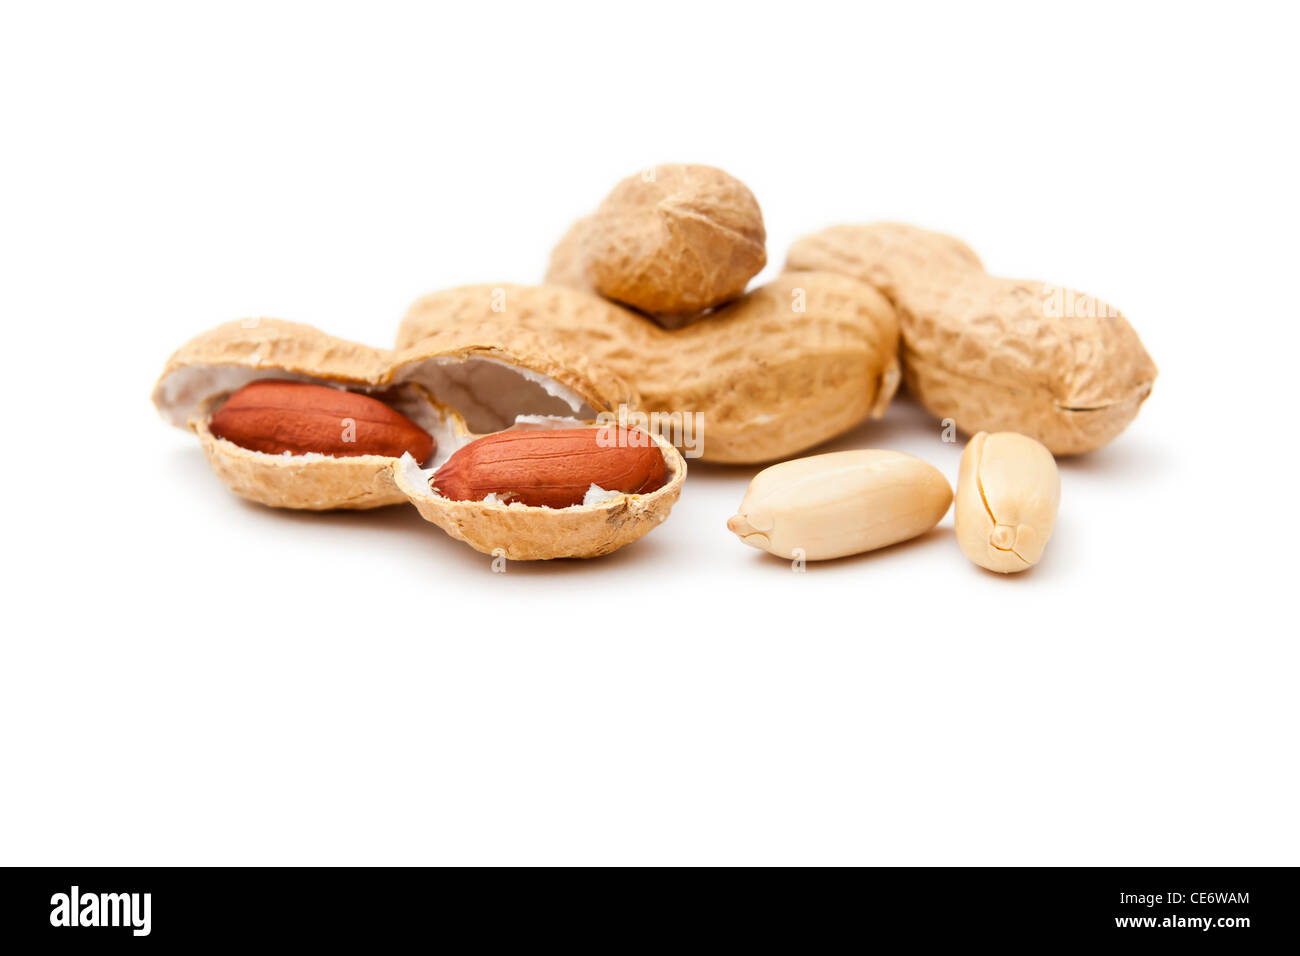 Una immagine di qualche bella arachidi su sfondo bianco Foto Stock